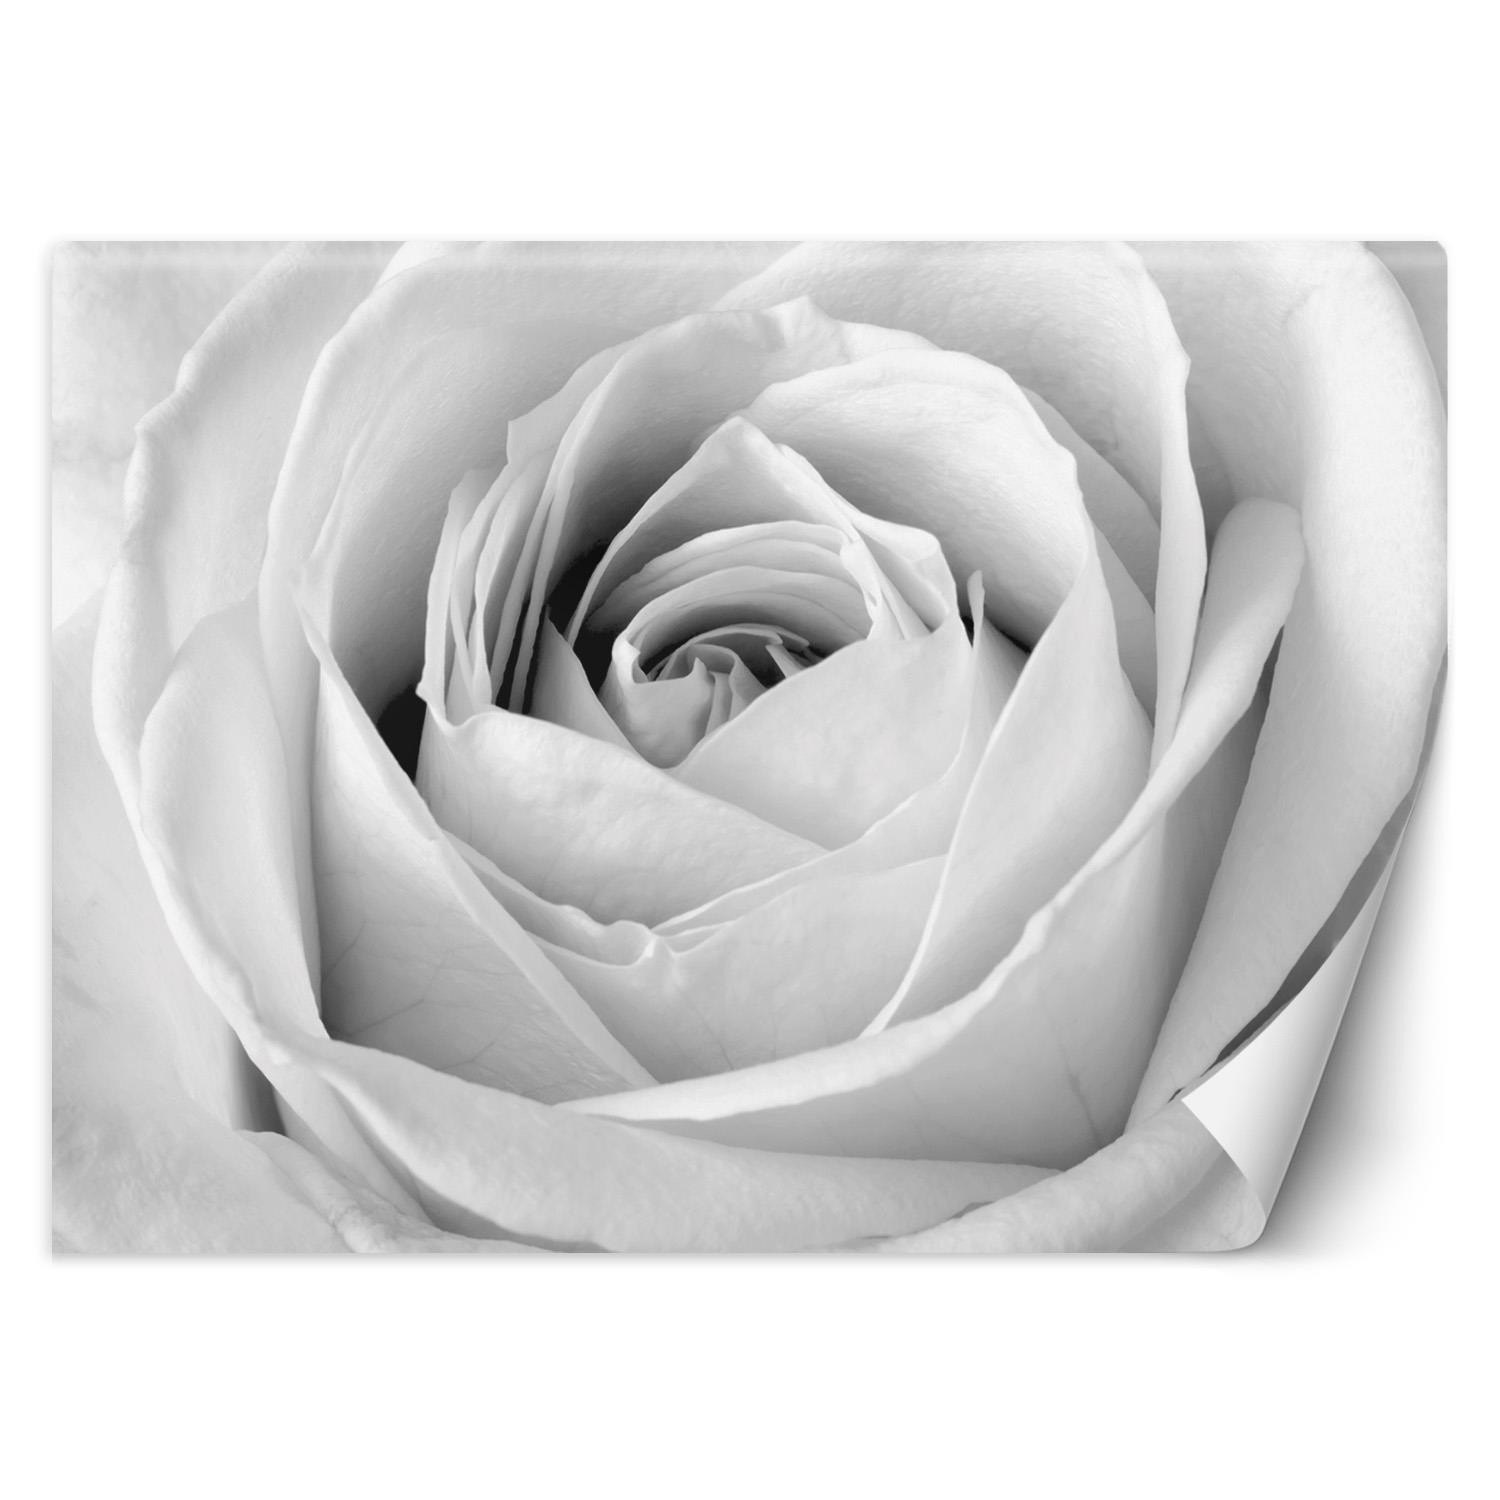 Trend24 – Behang – Witte Roos – Behangpapier – Fotobehang Bloemen – Behang Woonkamer – 250x175x2 cm – Incl. behanglijm